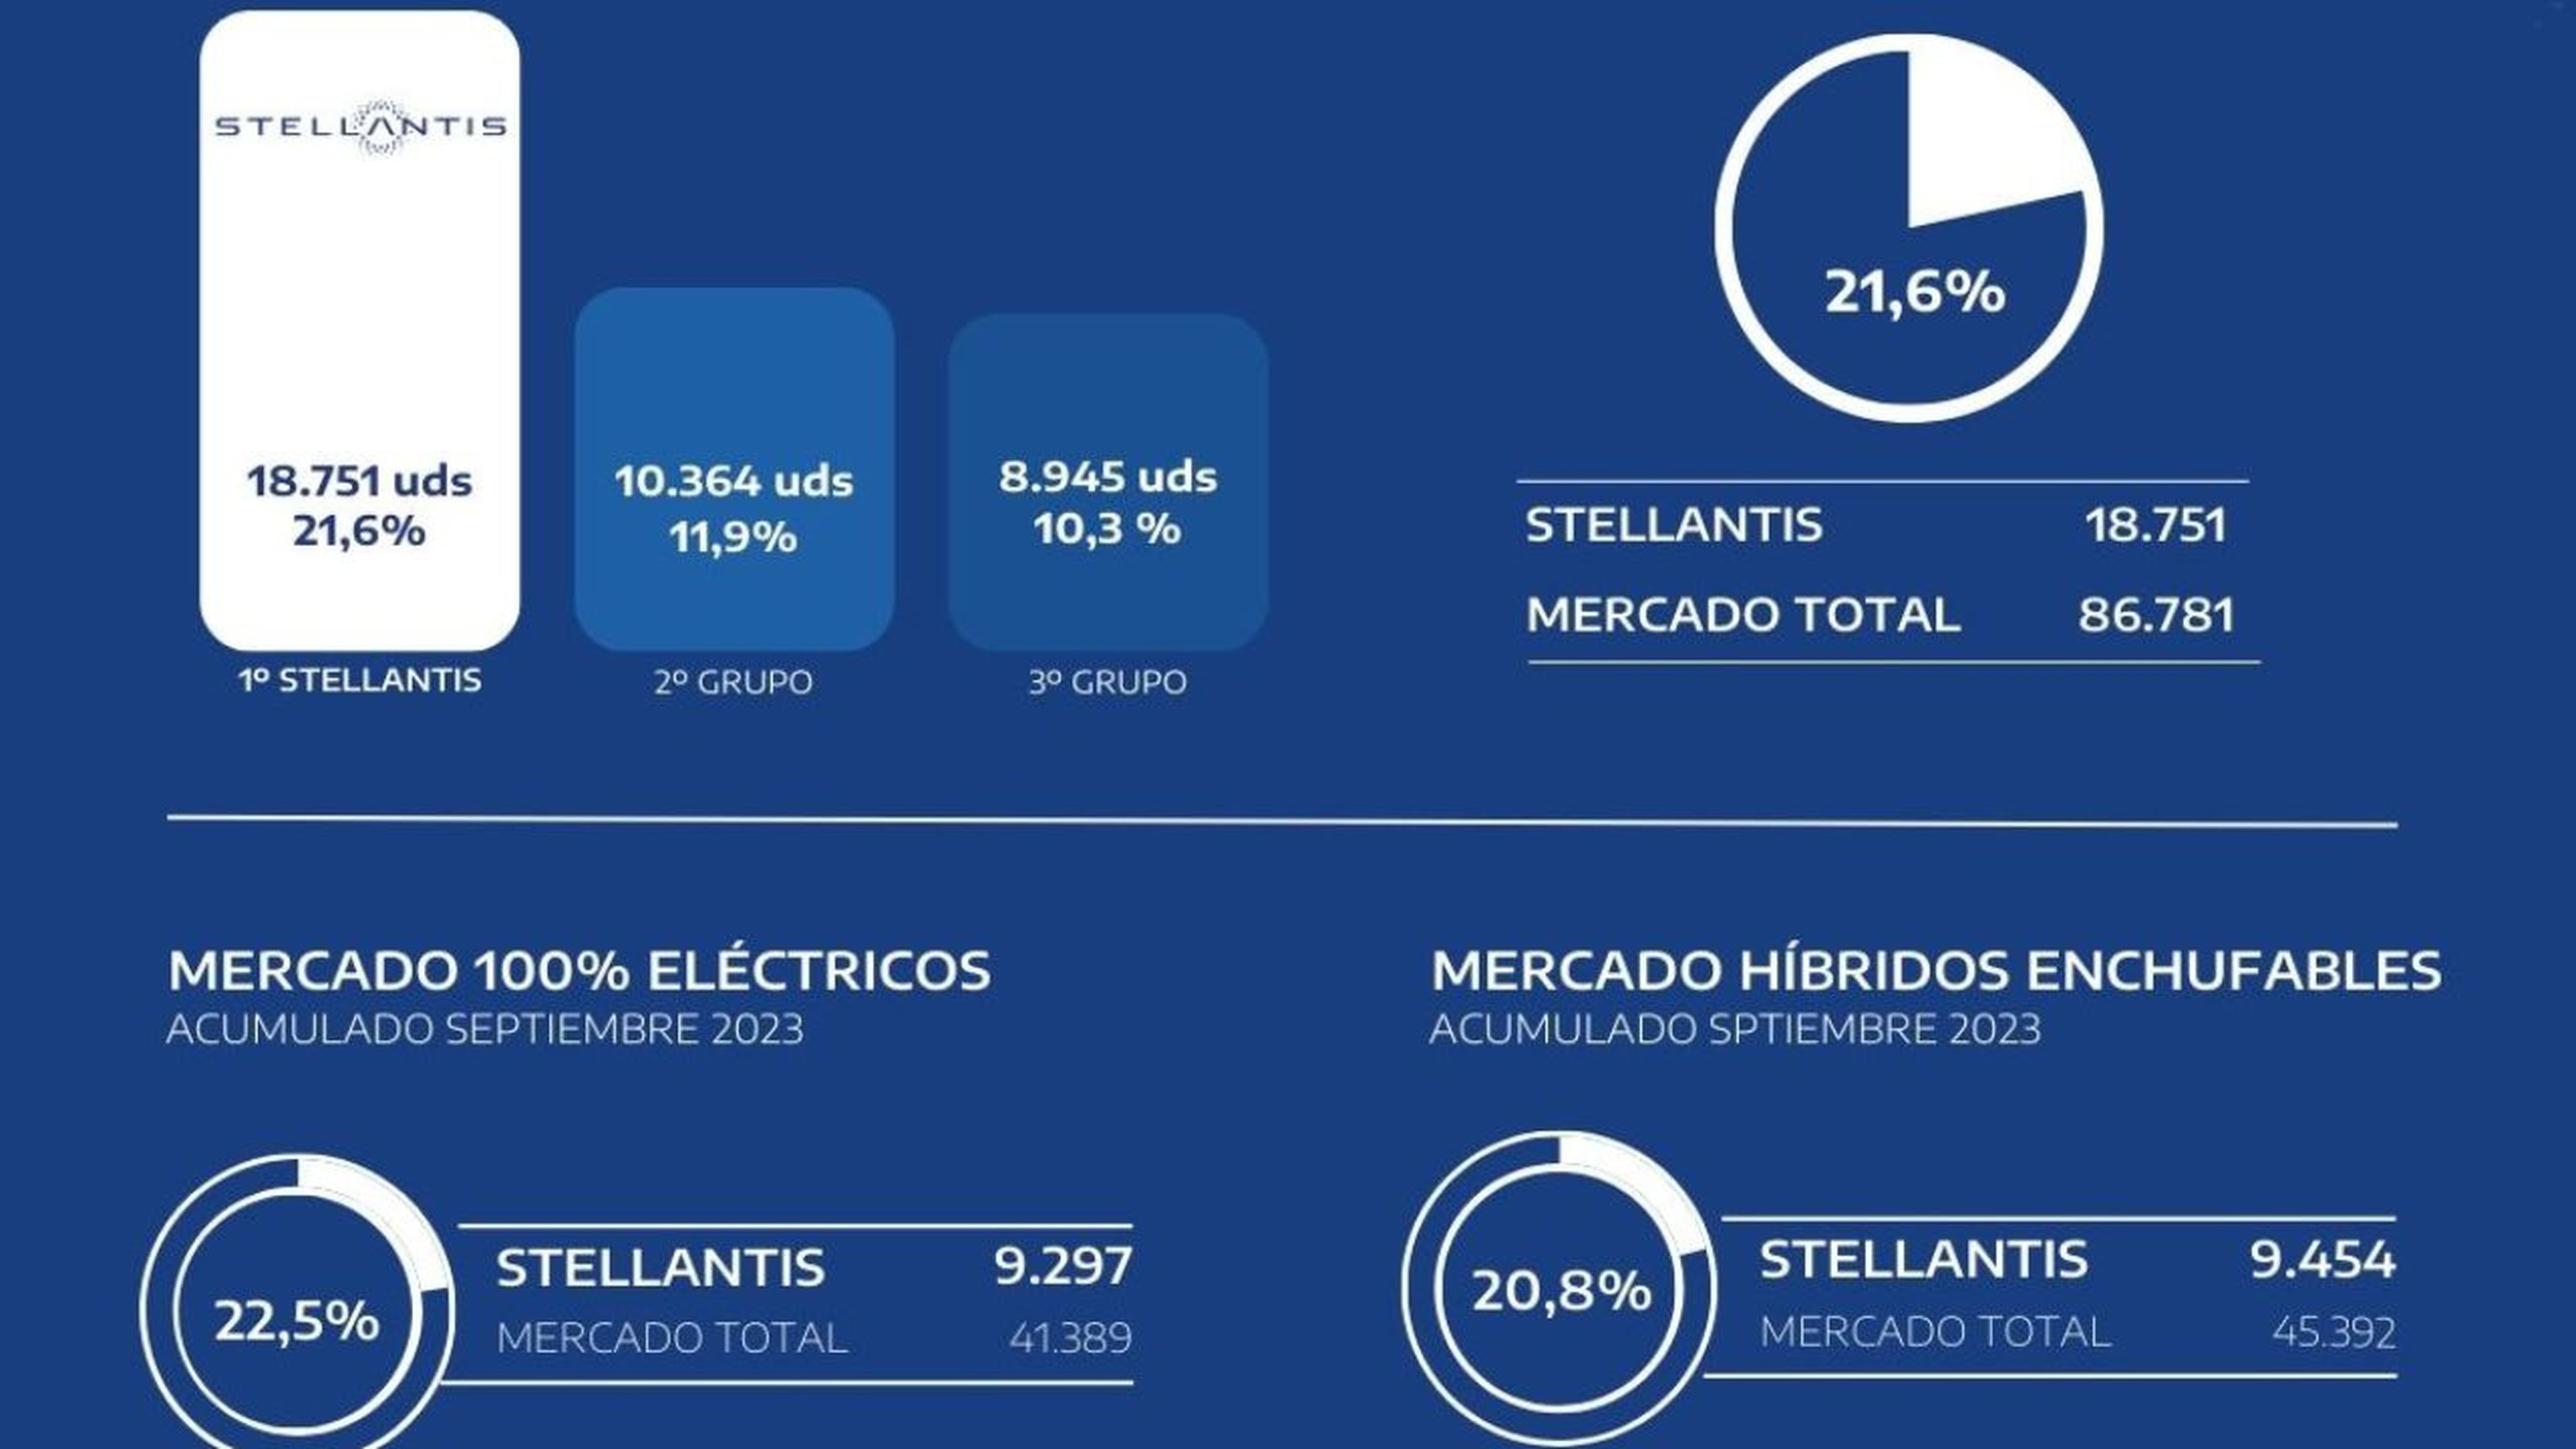 Stellantis, líder del mercado total electrificado español en lo que va de año